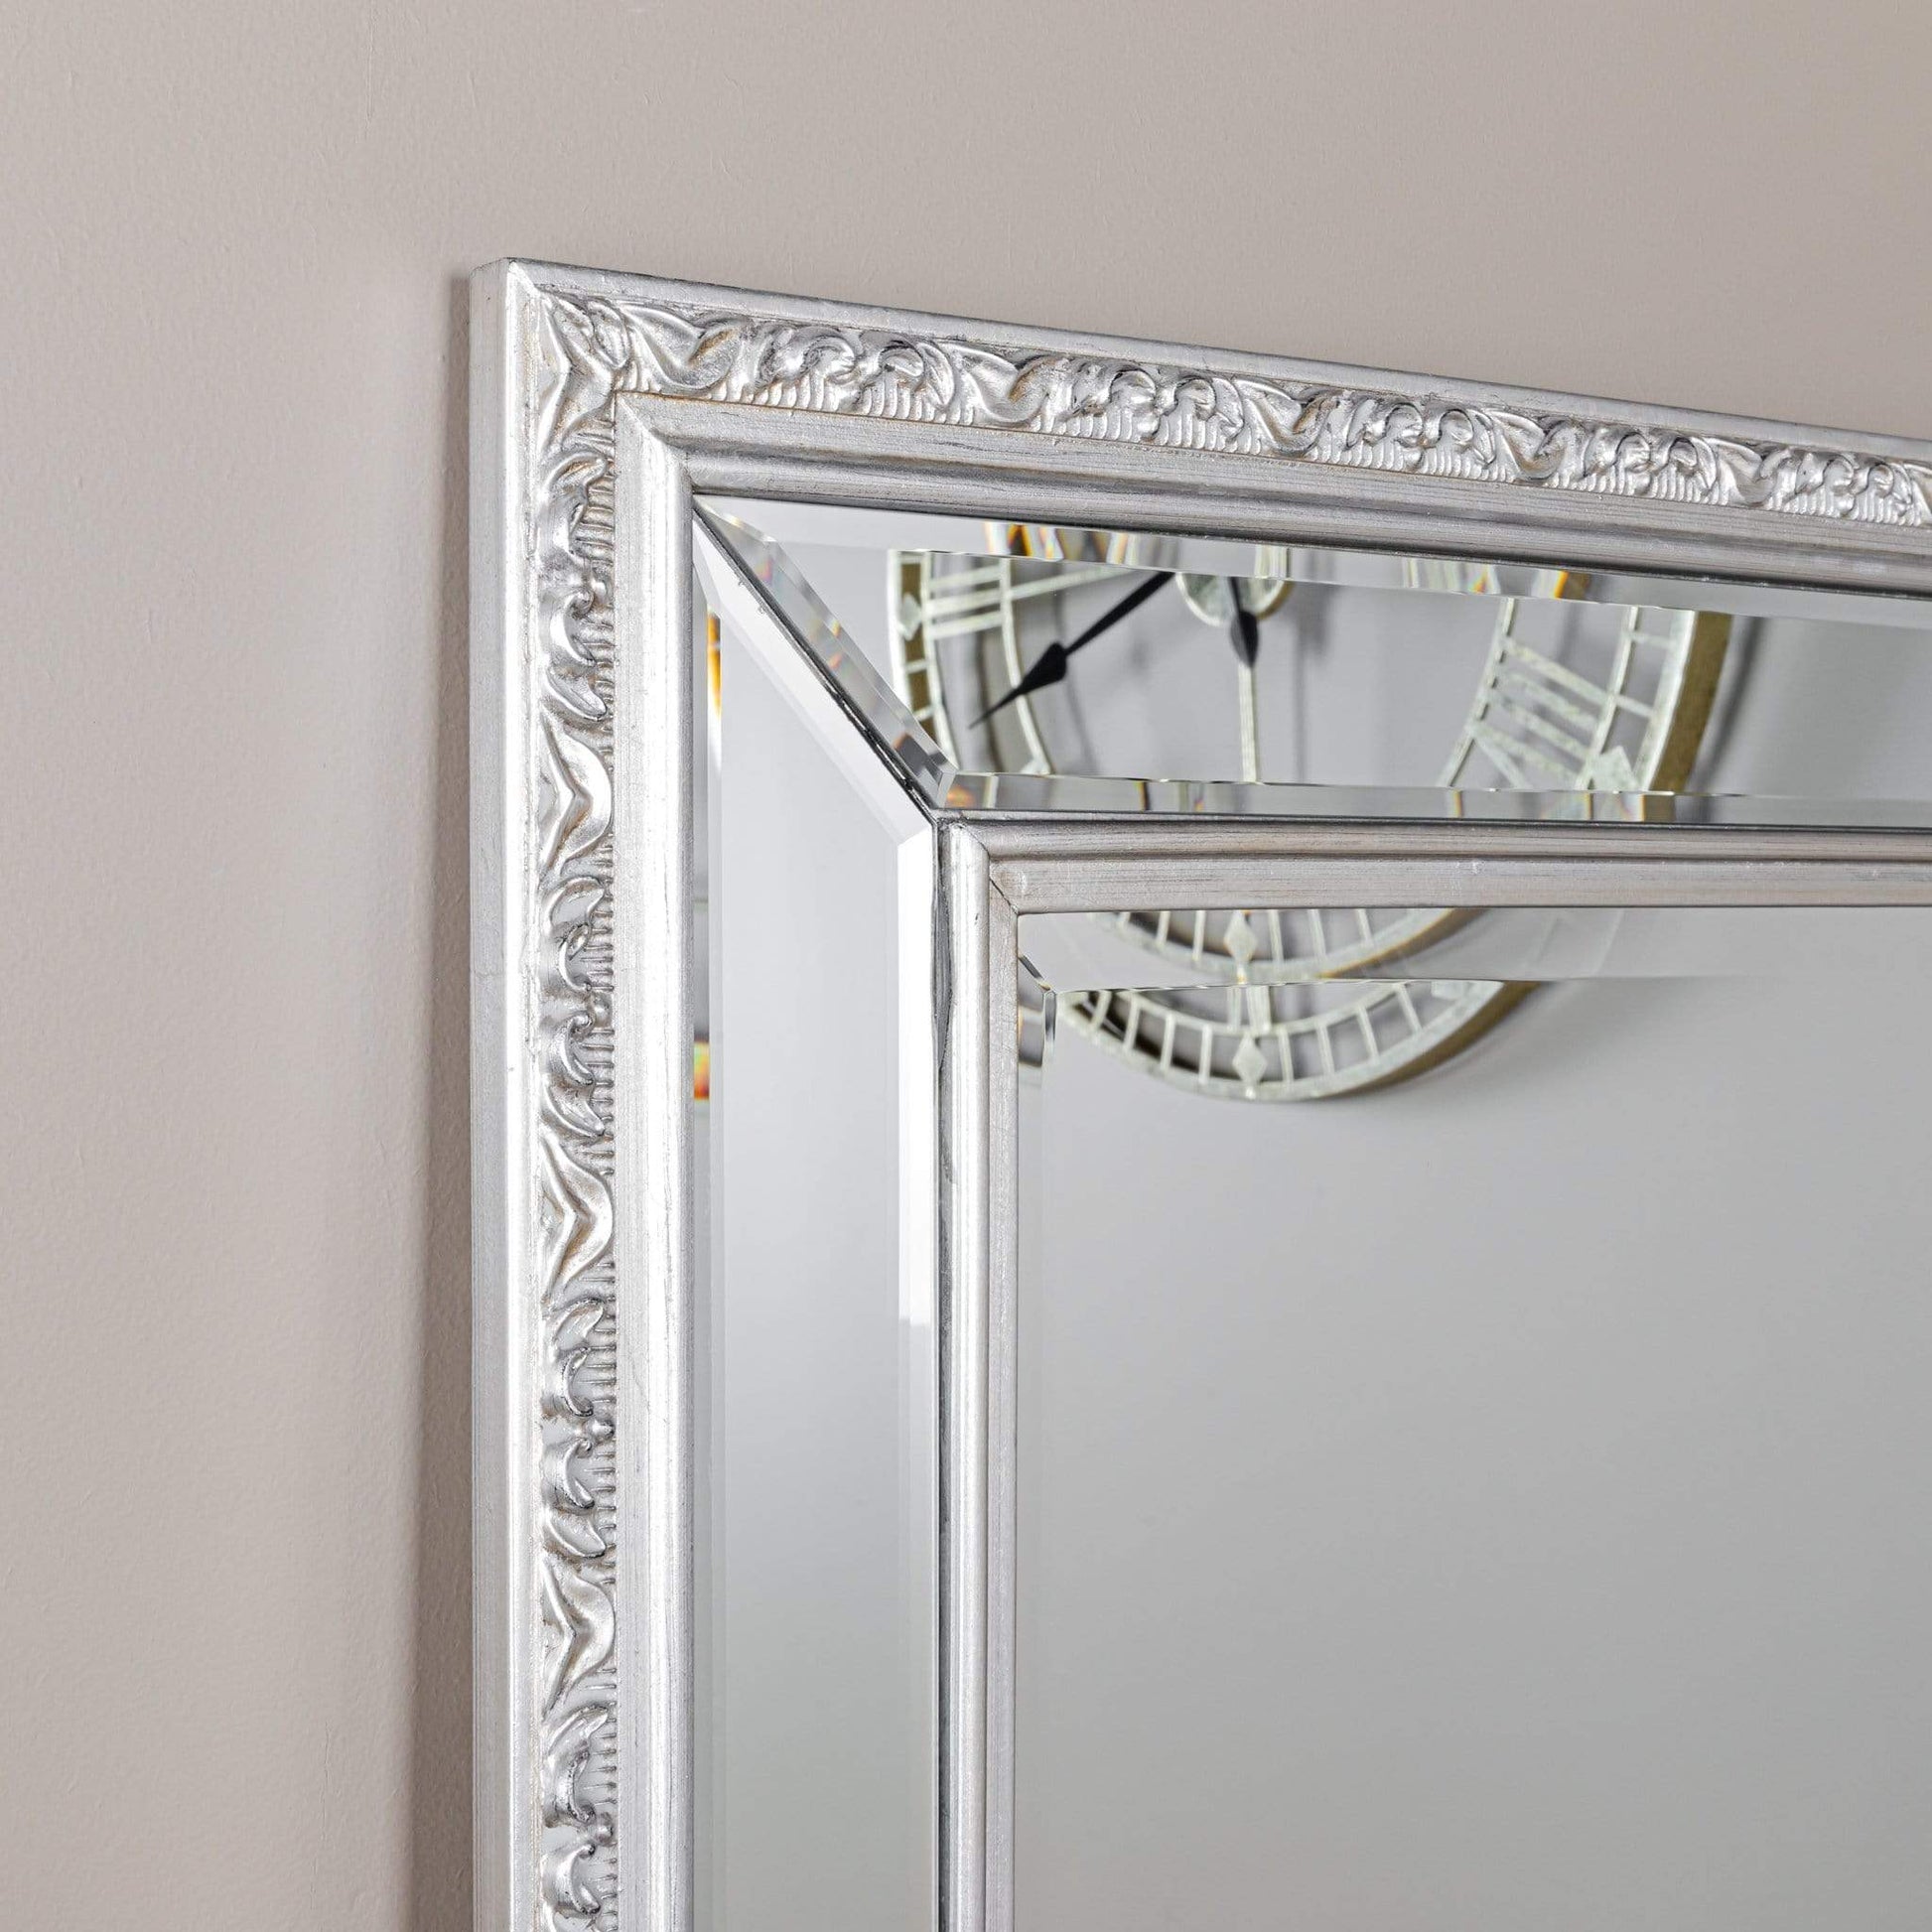 Mirrors  -  Gallery Marlebone Pewter Leaner Mirror - 227919  -  50134284